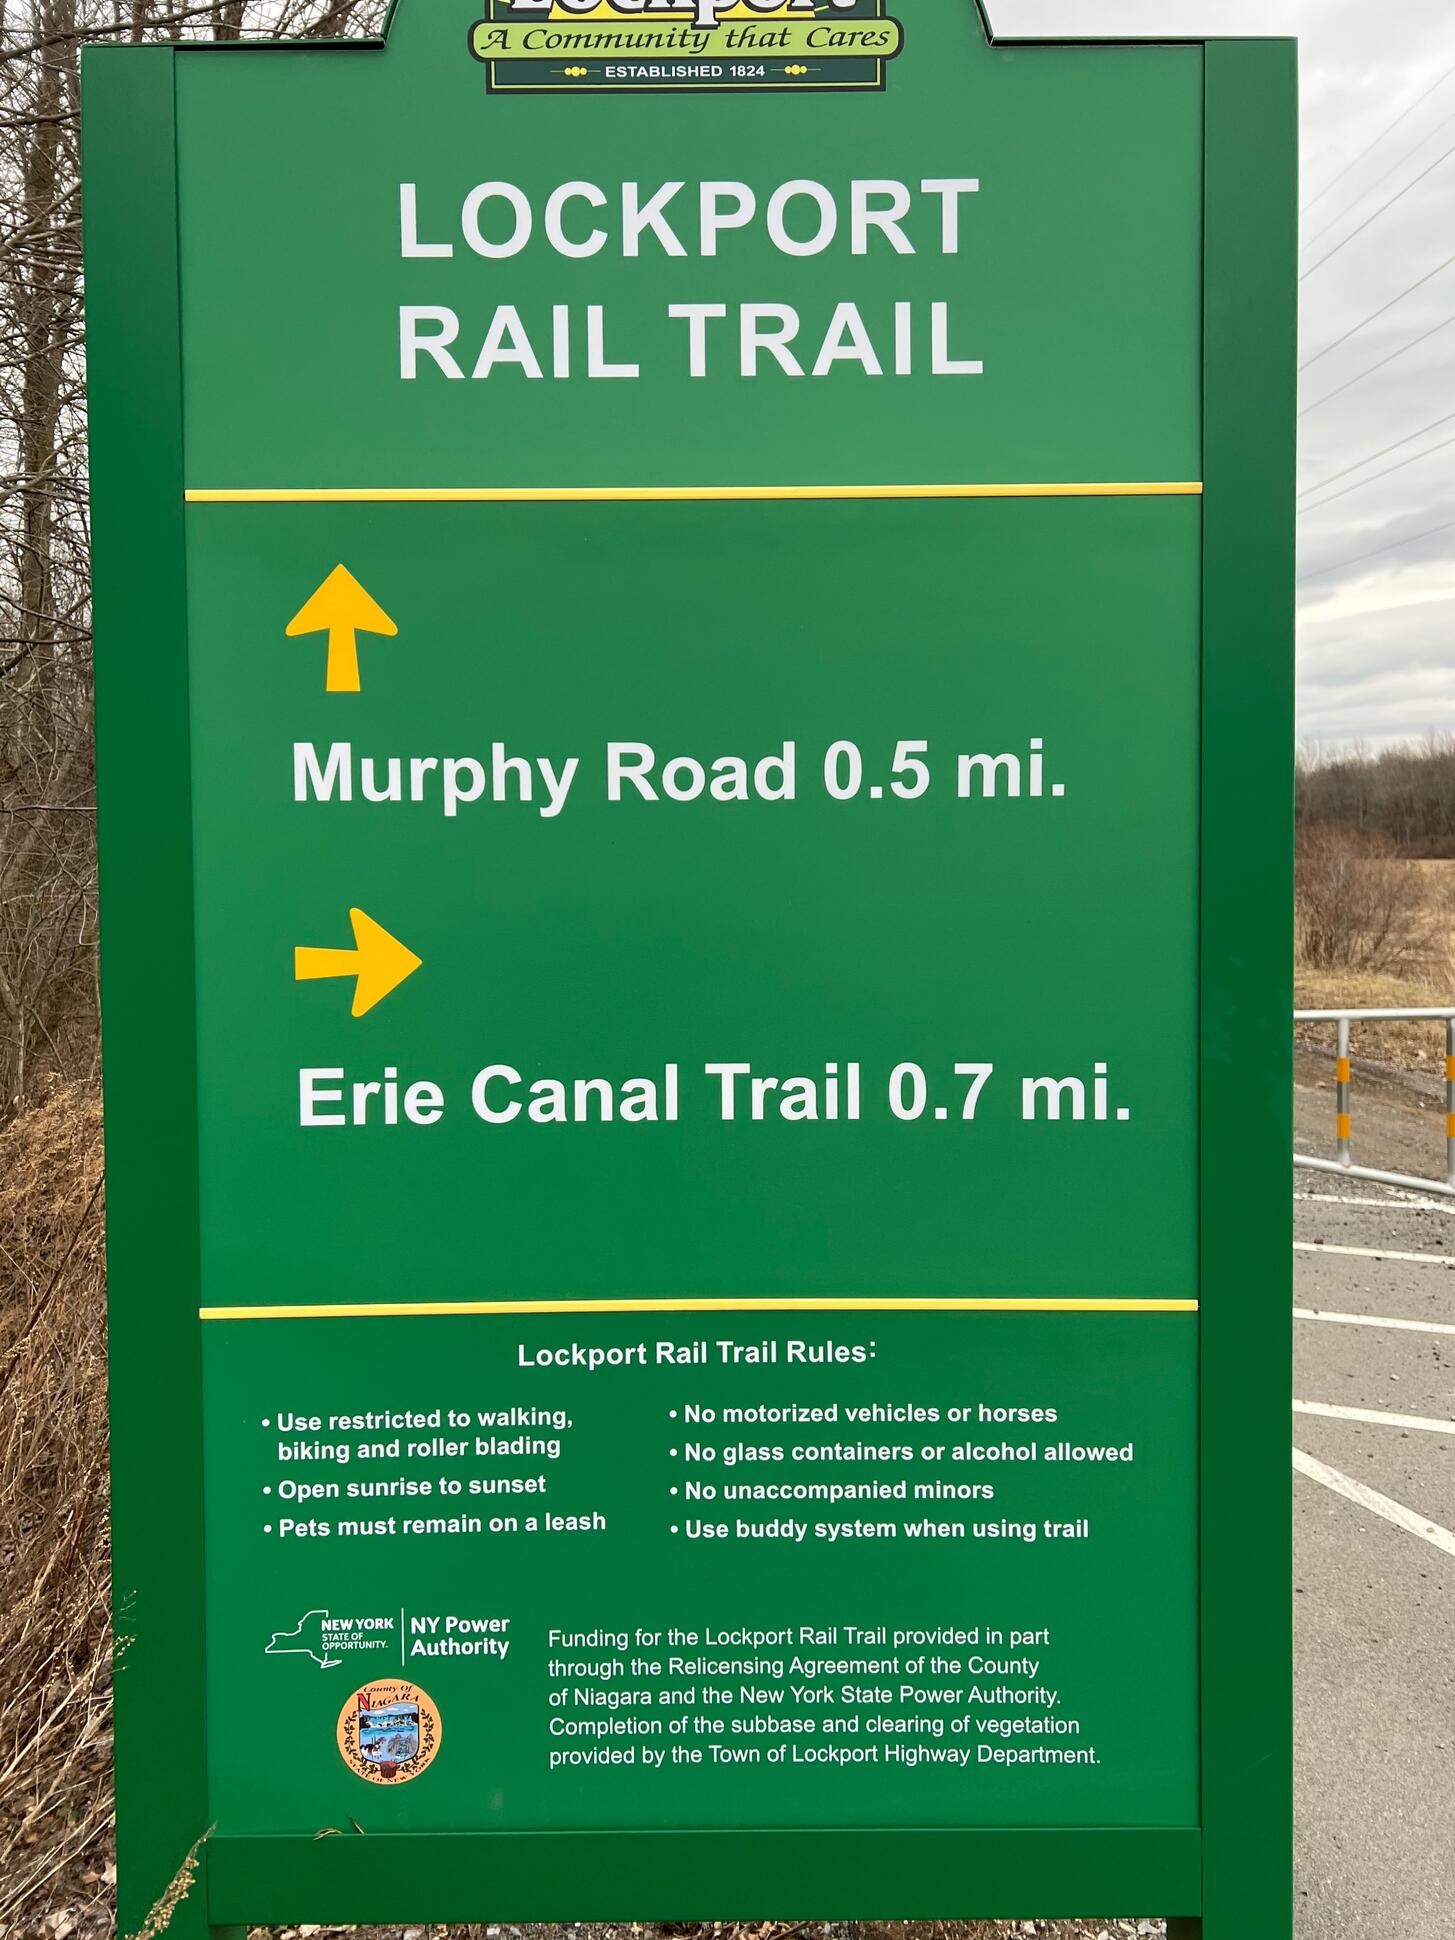 lockport rail trail sign